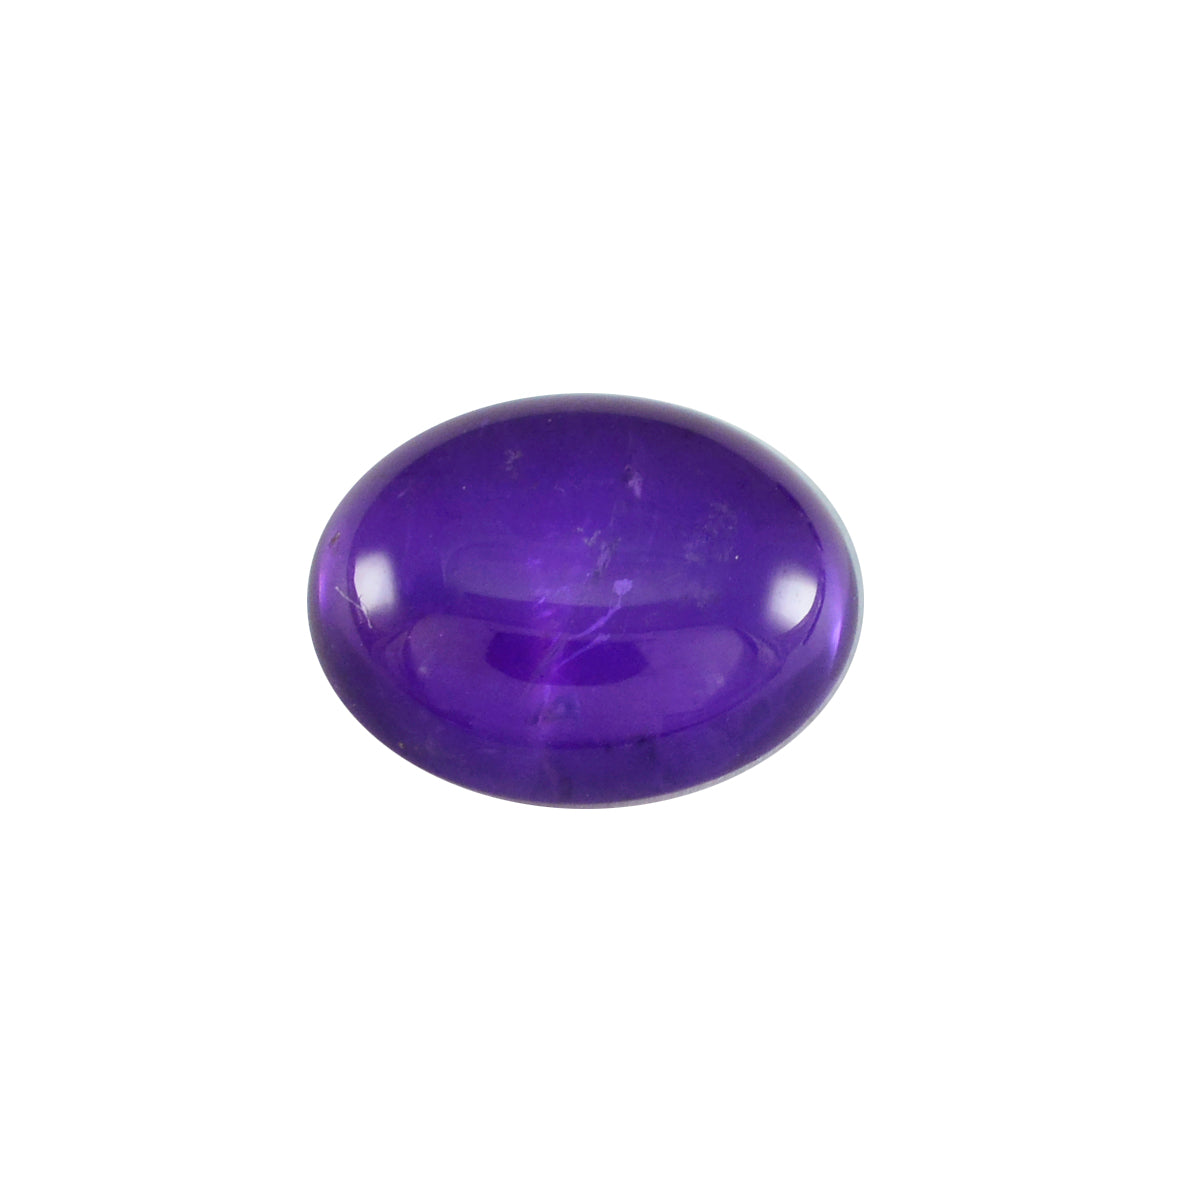 Riyogems 1PC Purple Amethyst Cabochon 10x12 mm Oval Shape nice-looking Quality Gems